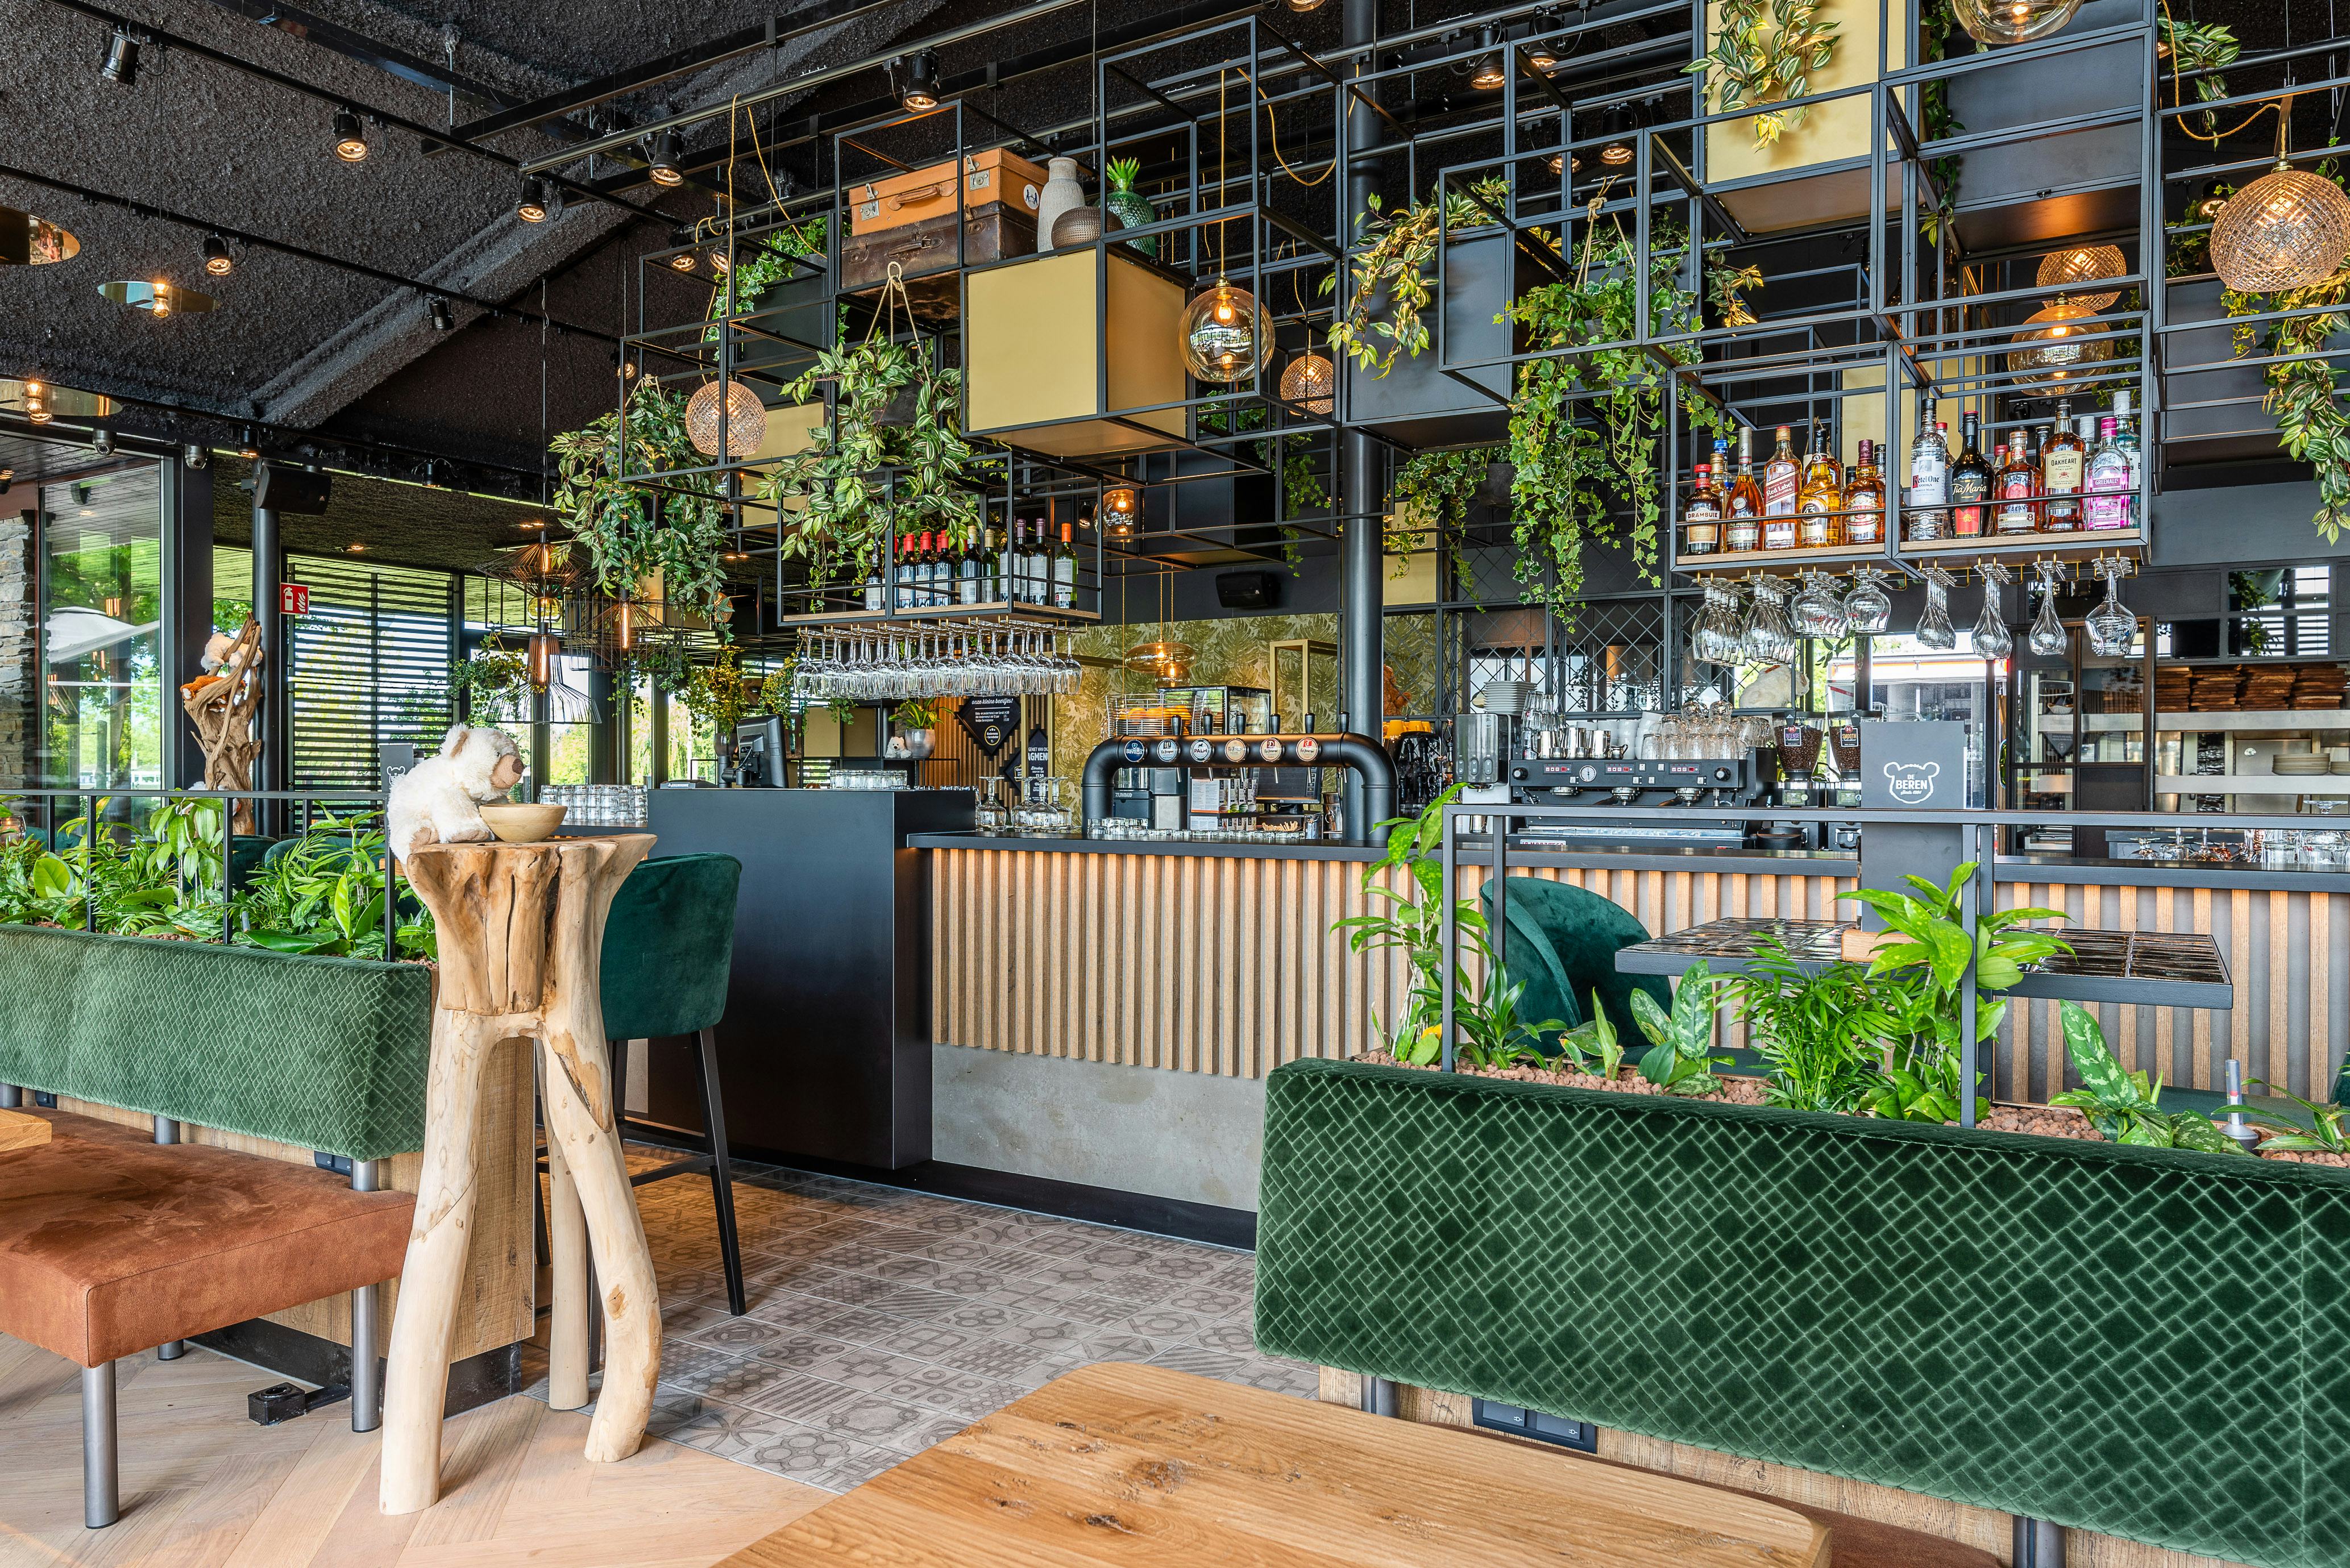 Restaurant De Beren opent filiaal in Veenendaal